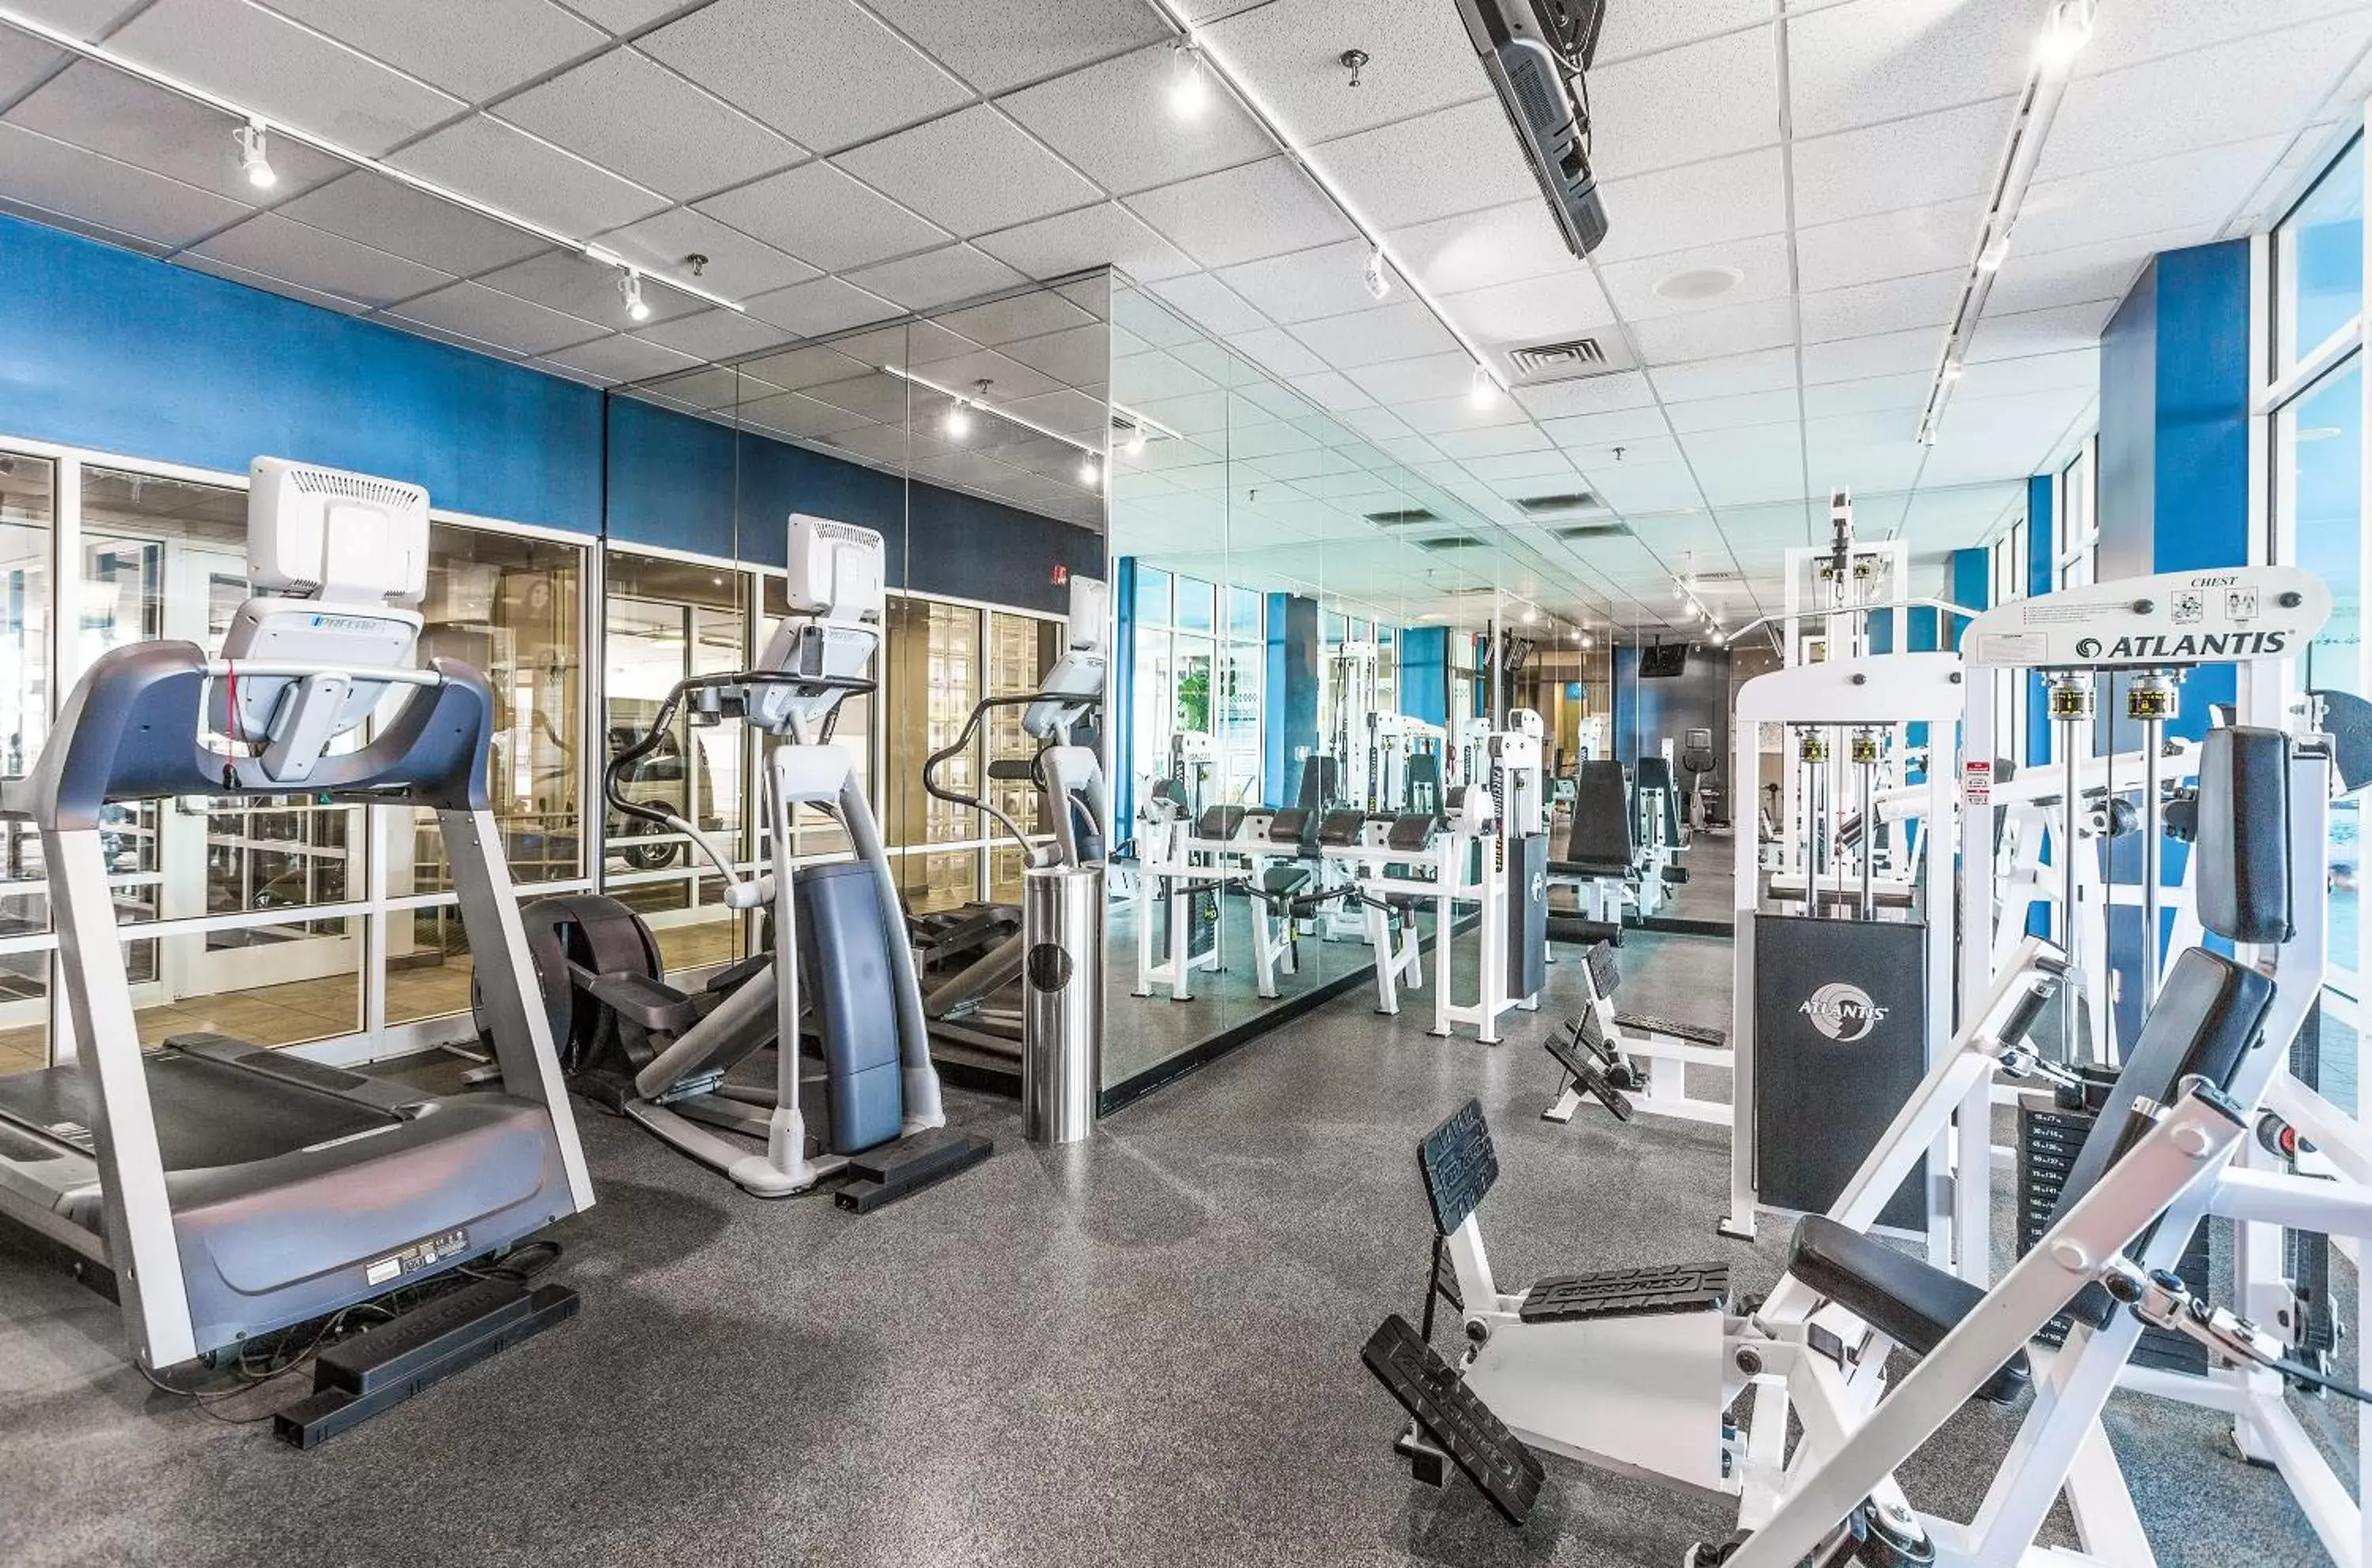 Fitness centre/facilities, Fitness Center/Facilities in Boardwalk Resort and Villas